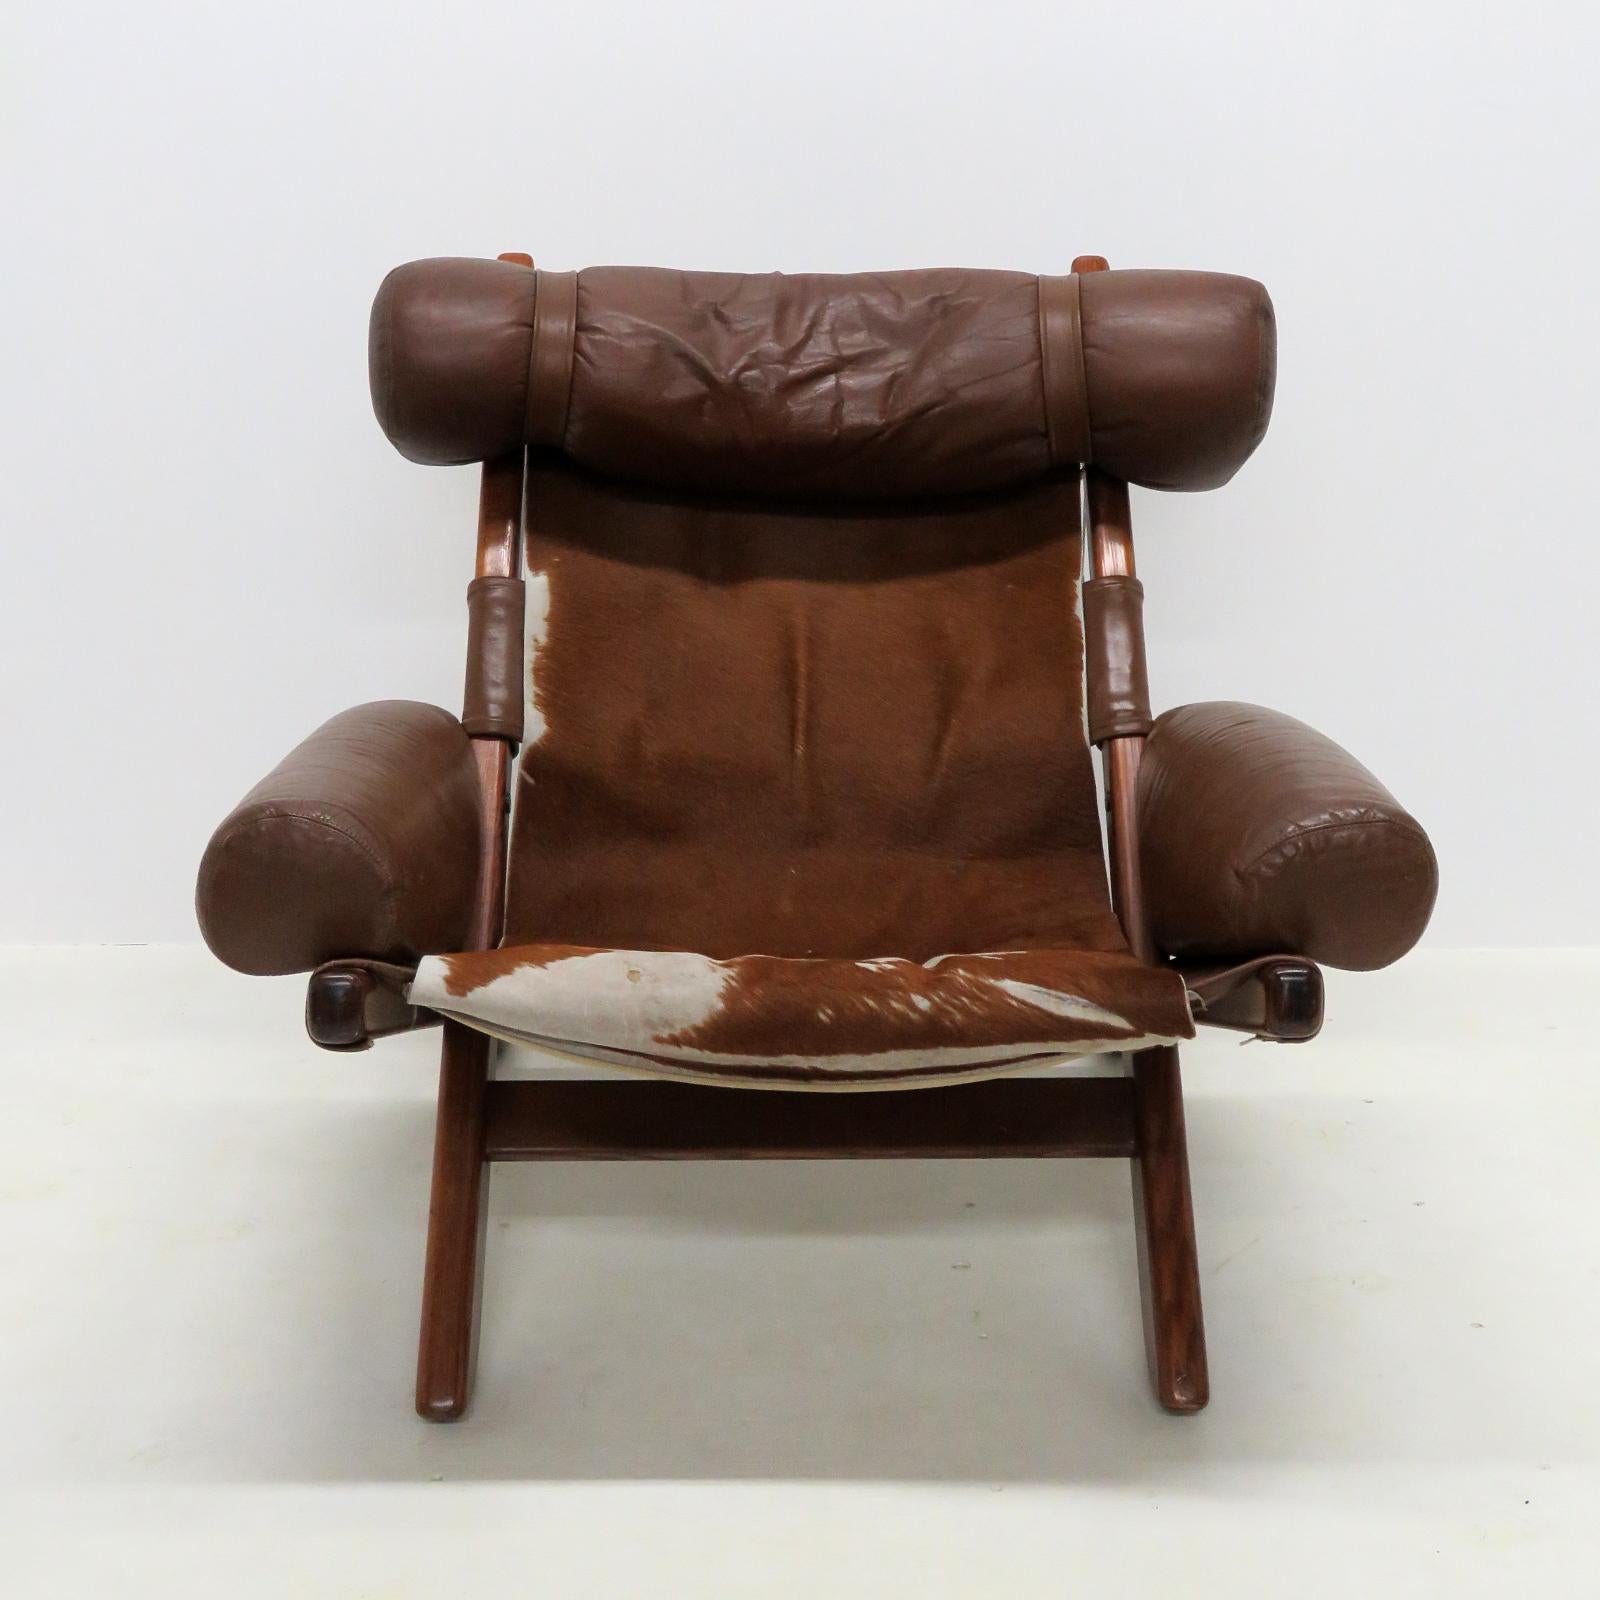 Chaise de salon scandinave unique des années 1960/70, avec revêtement d'origine en cuir et peau de vache sur un cadre en teck, quelques usures, taches et dommages mineurs.